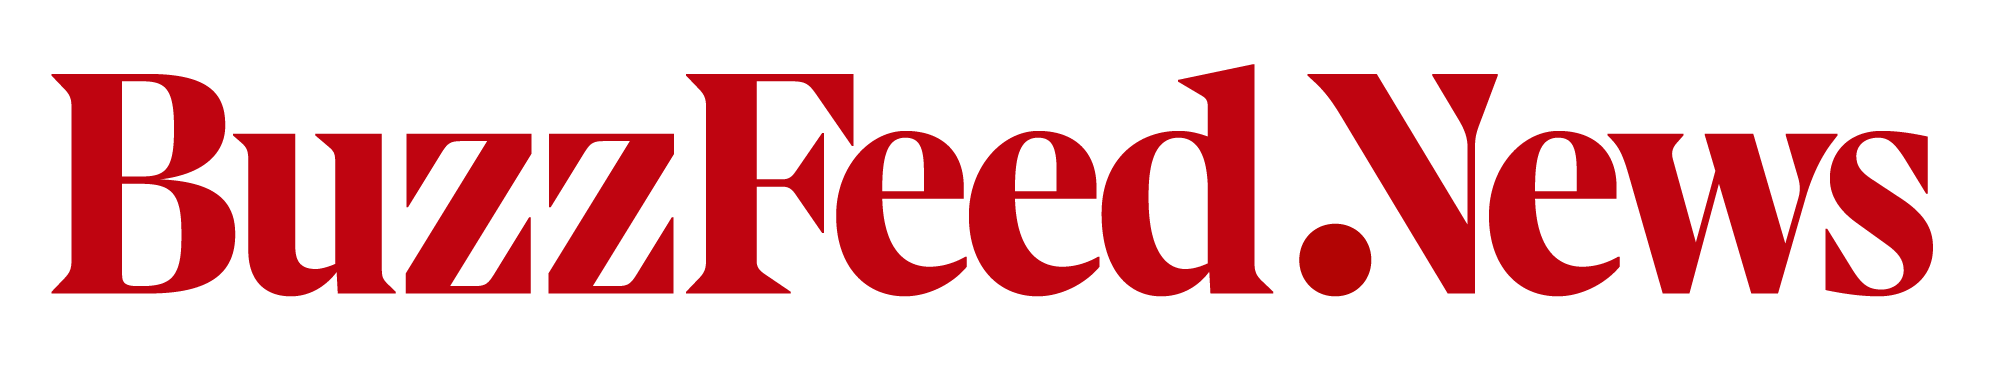 BuzzFeed News Logo